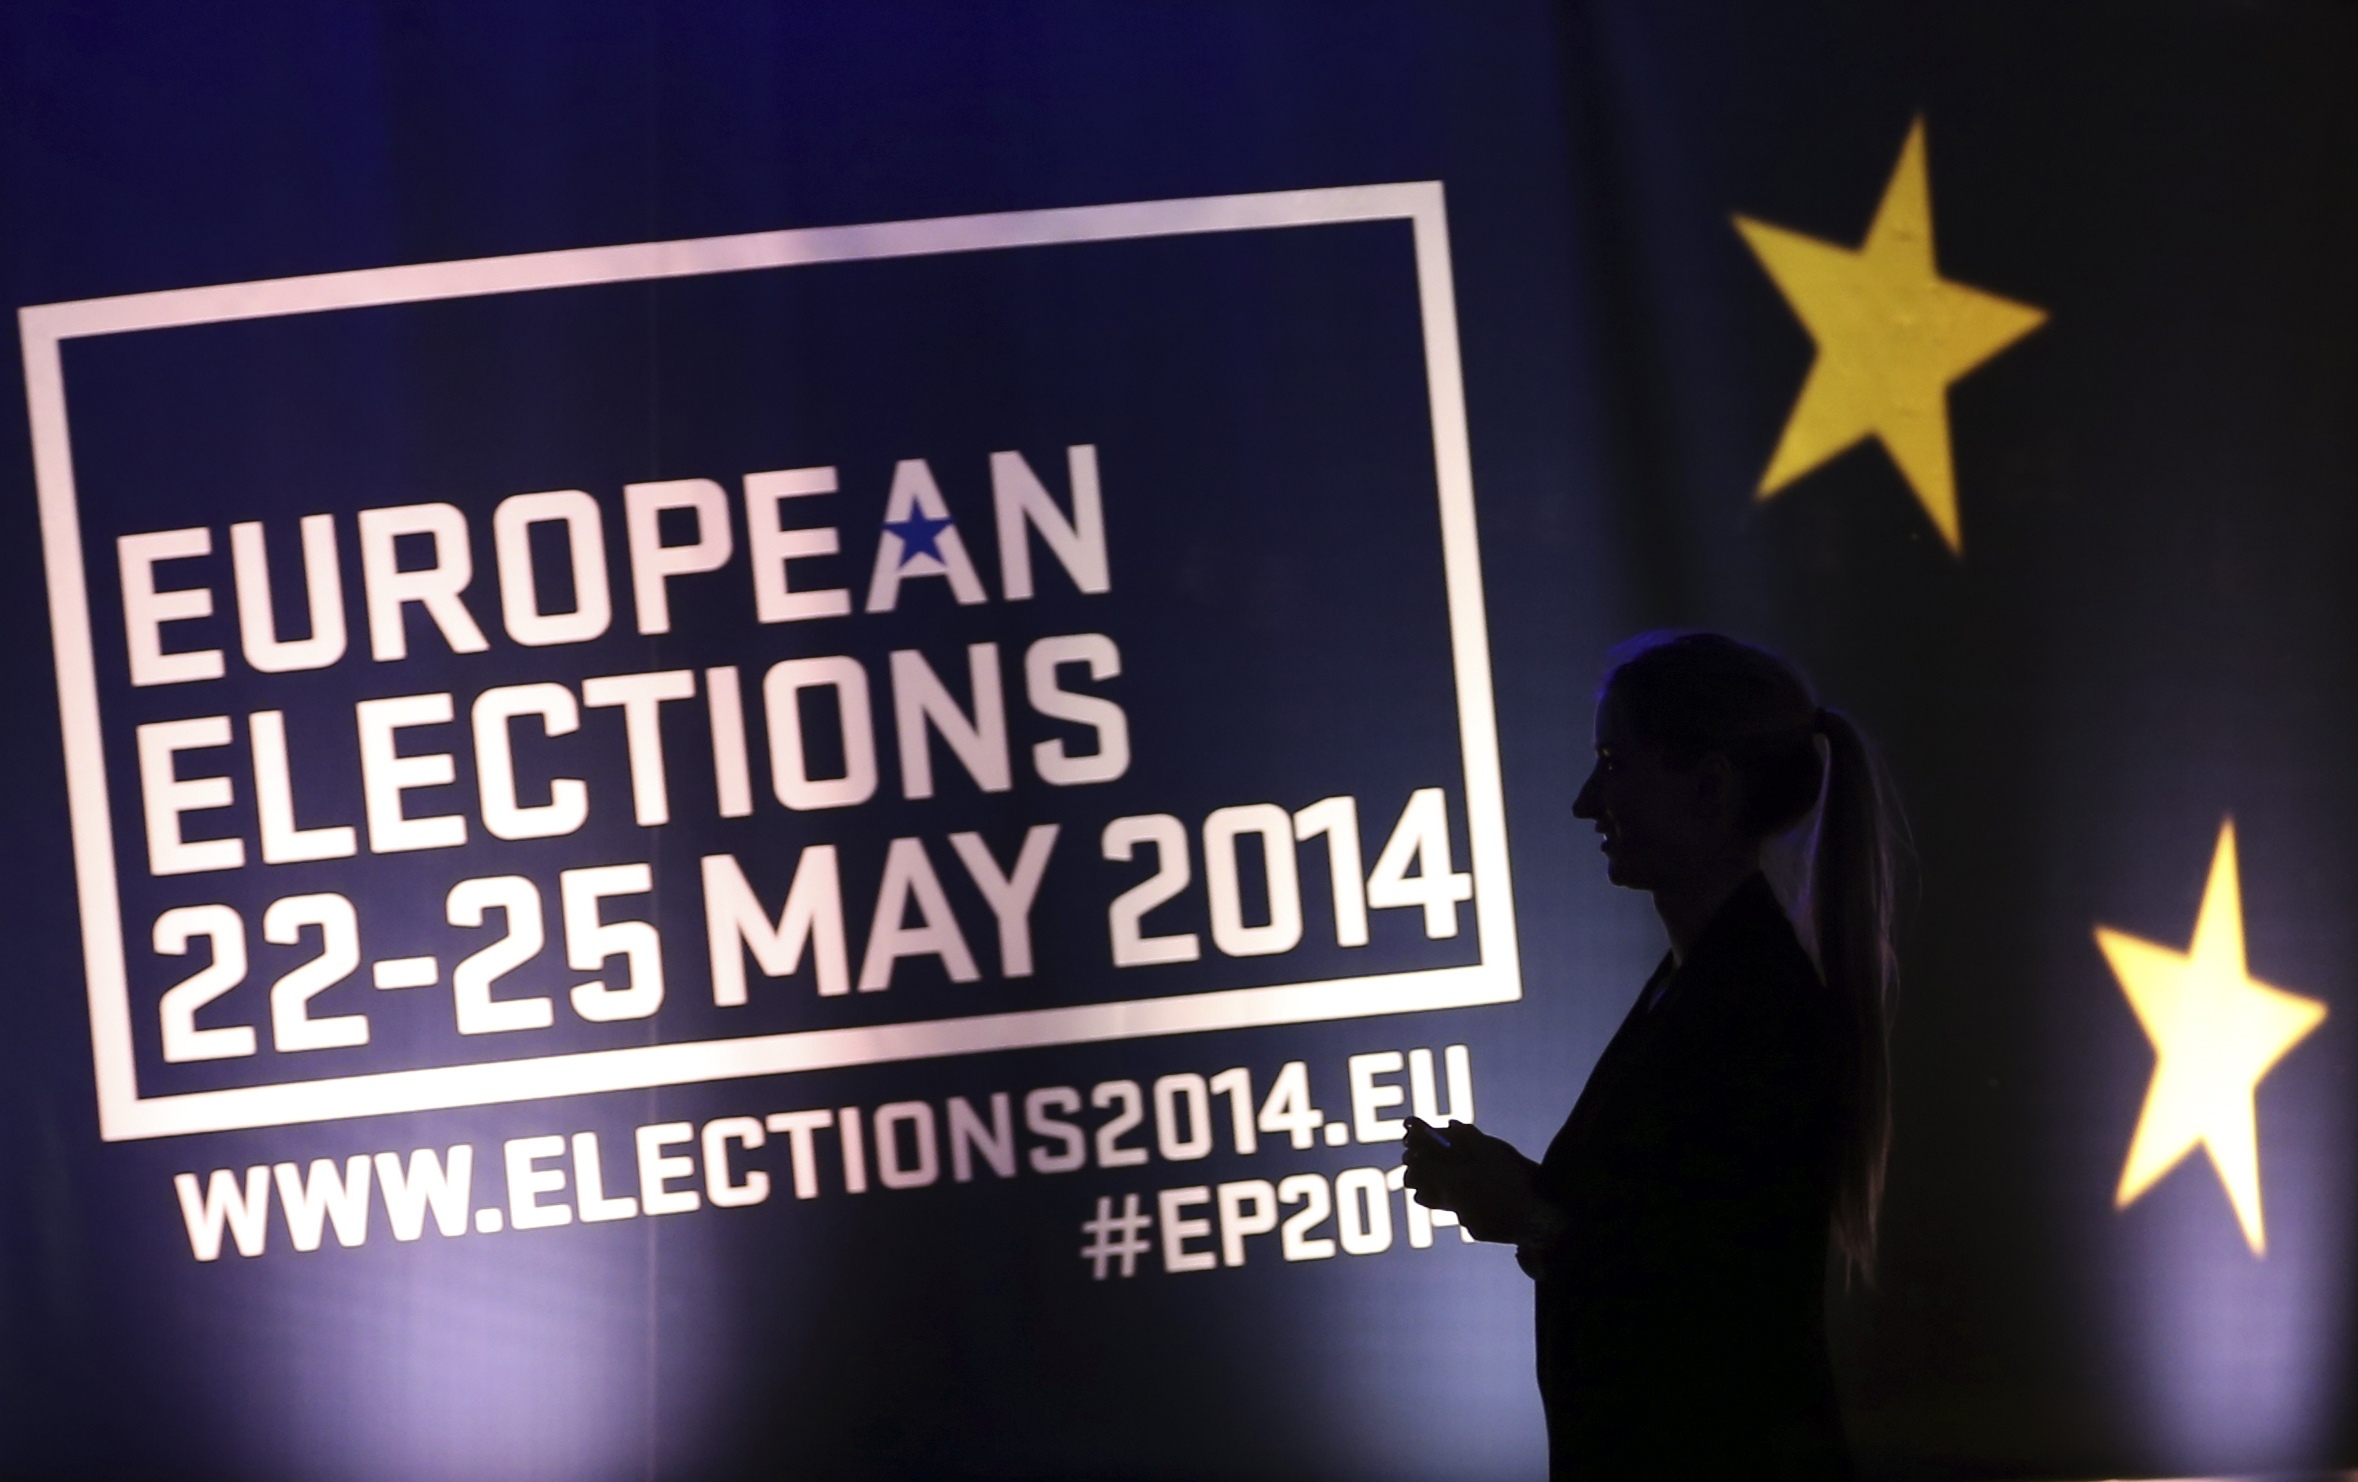 Ευρωεκλογές 2014: Οι πρώτοι σε σταυρούς στην Ευρωβουλή